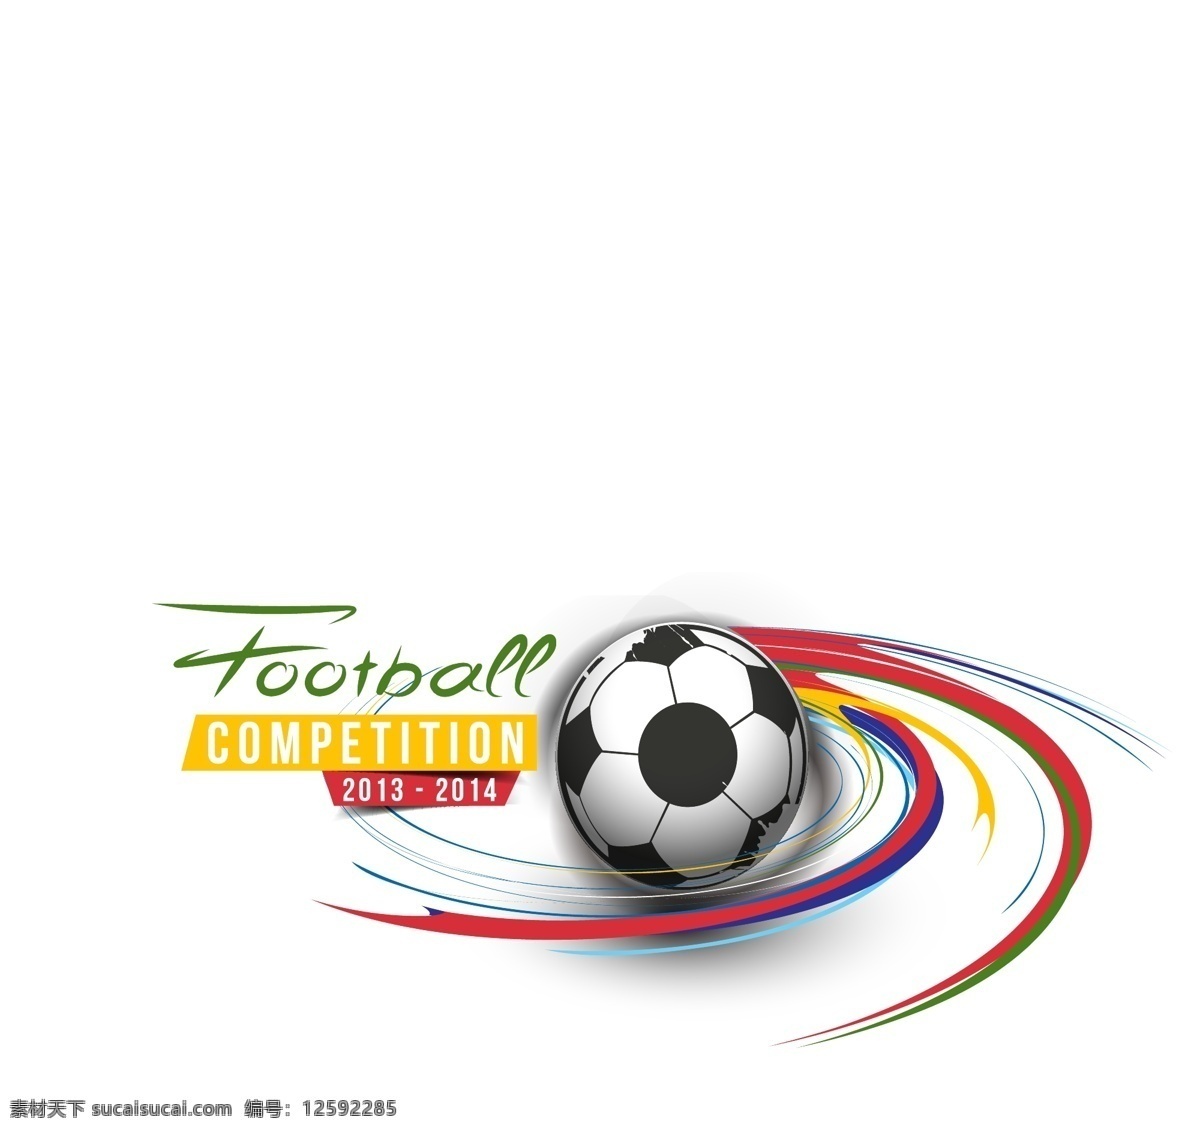 足球 世界杯 版面设计背景 高清设计图 高清图片素材 广告背景 模板设计 设计素材 足球世界杯 足球素材 个性英文 矢量图